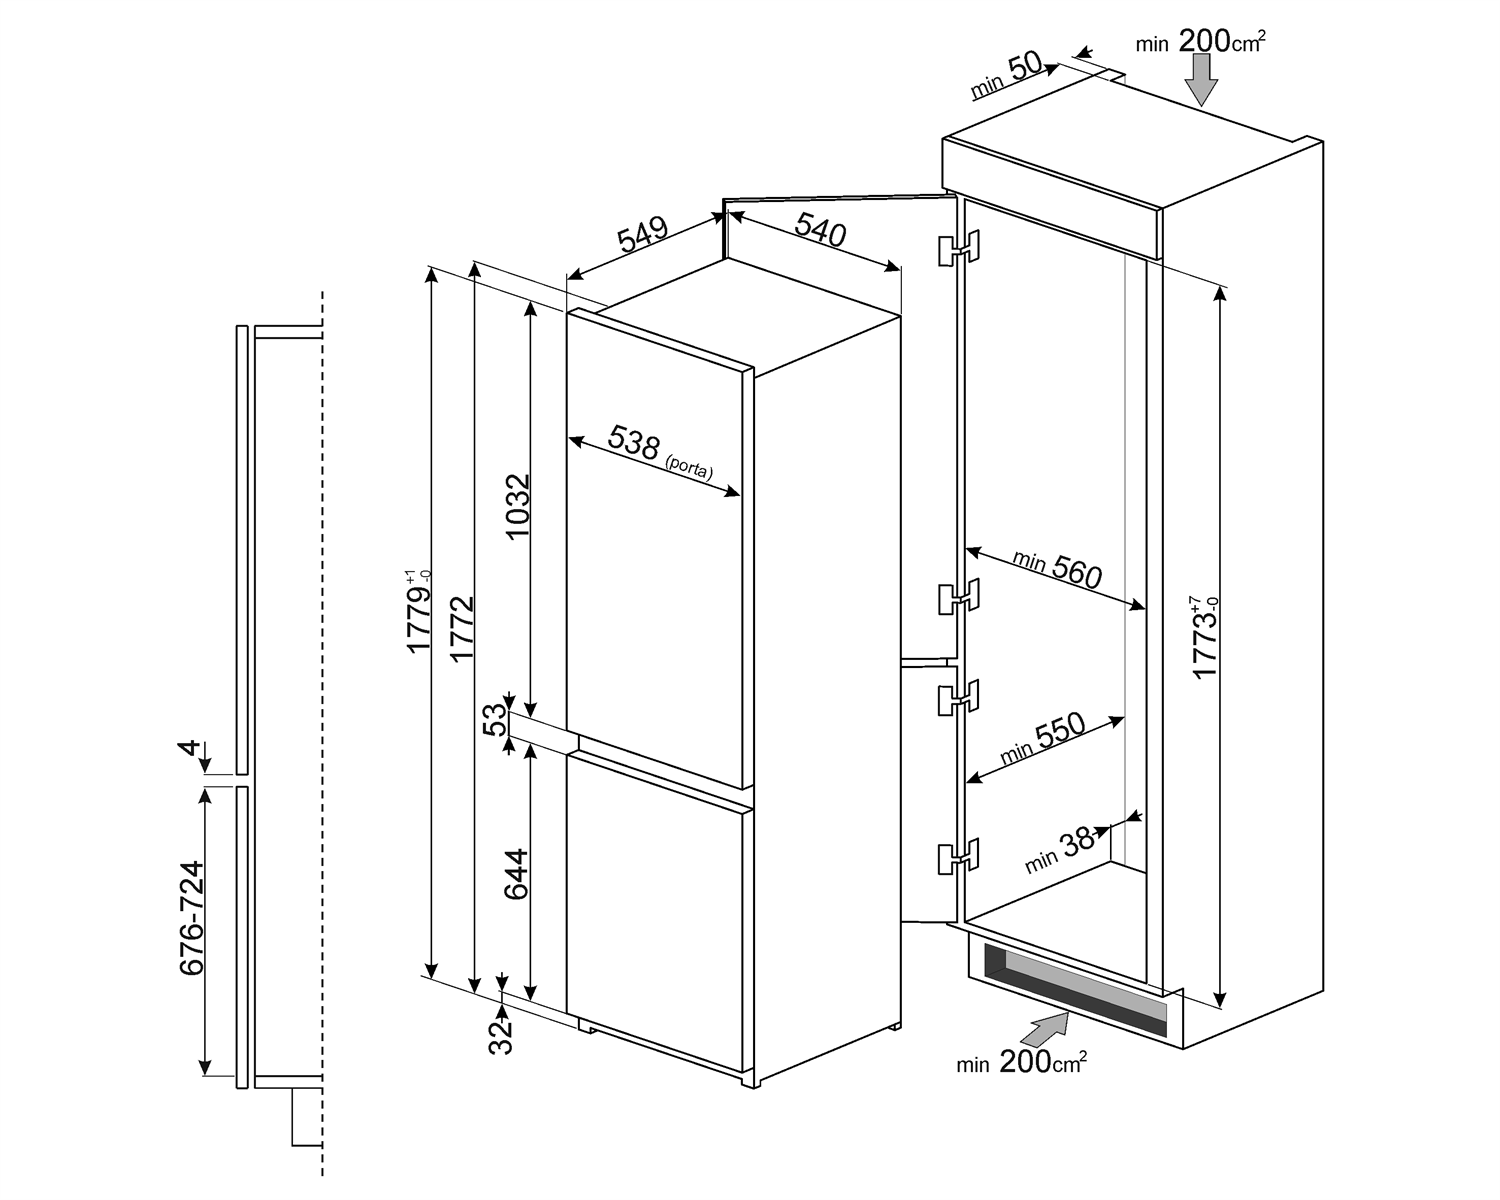 Maattekening SMEG koelkast inbouw C7280NLD2P1